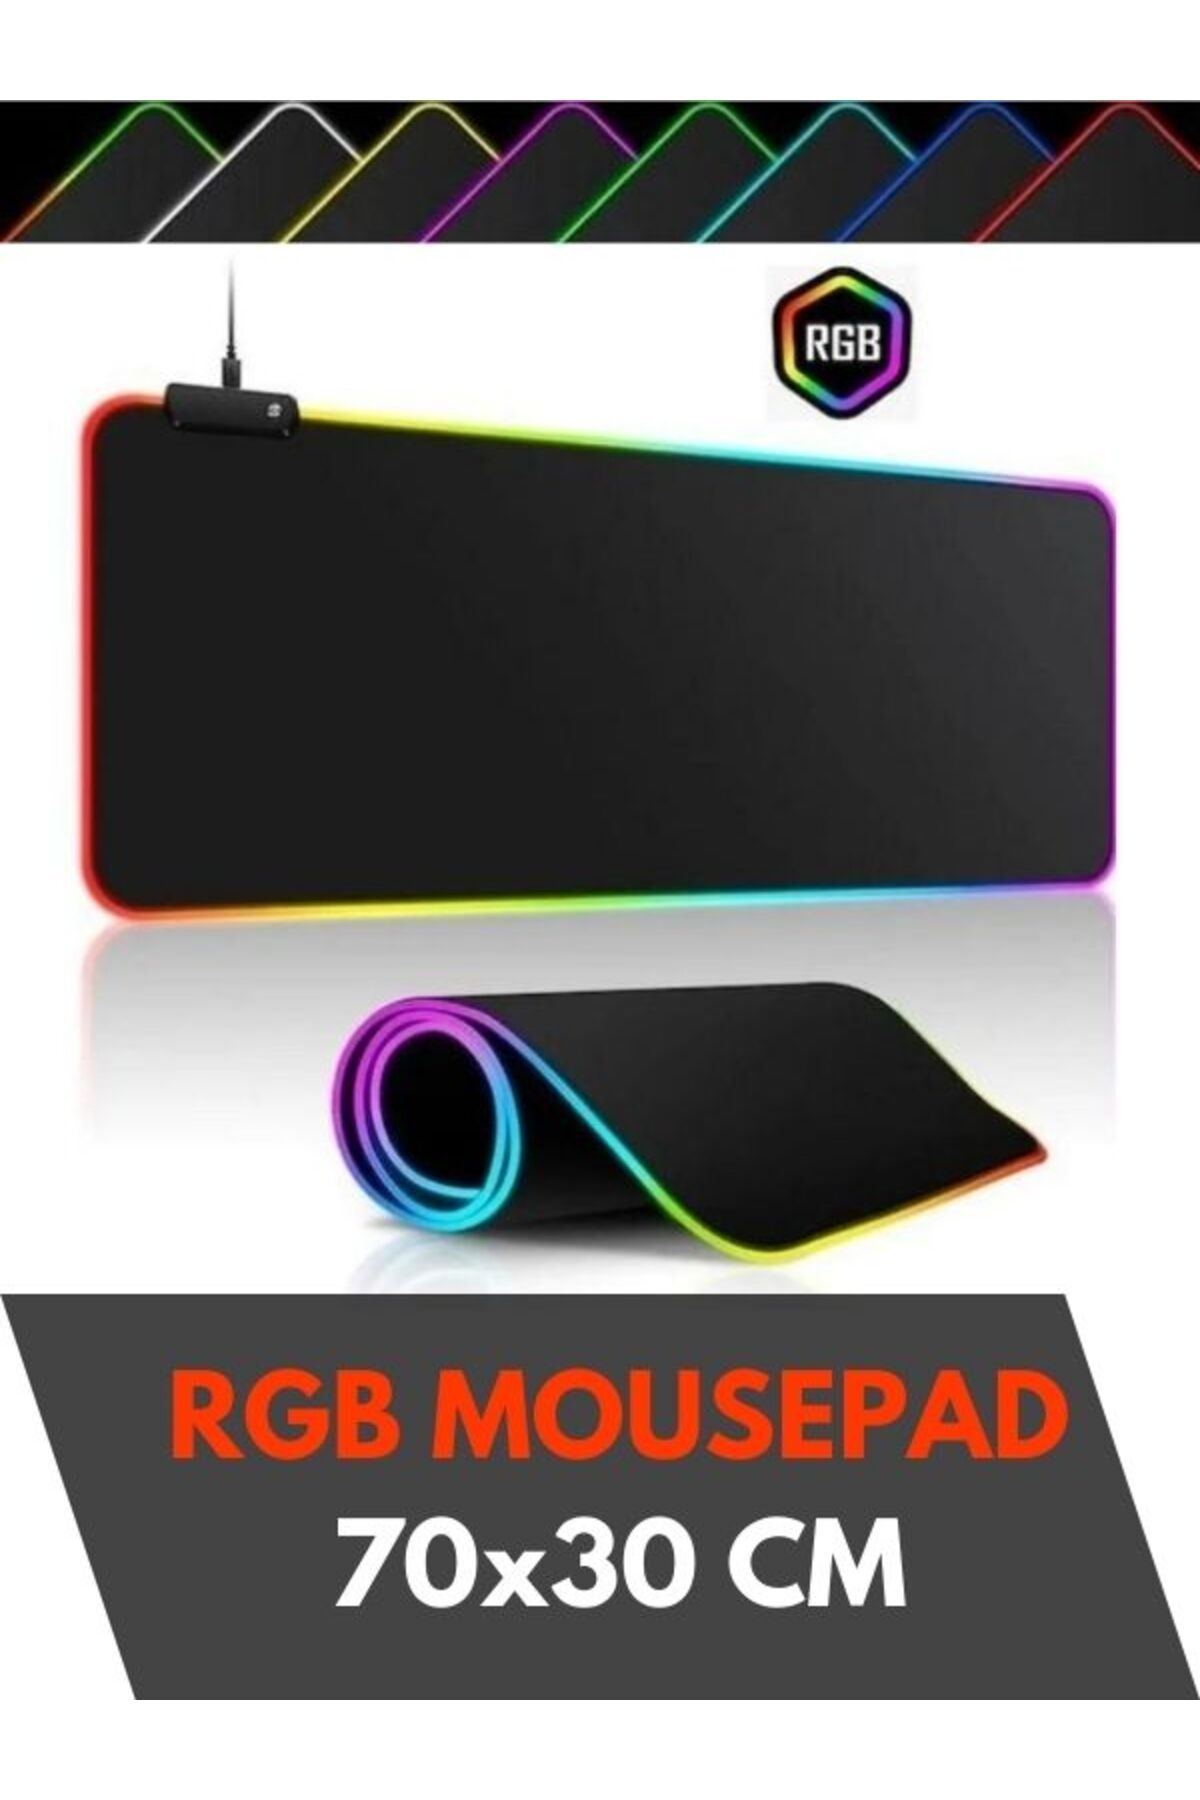 Sarftech 70x30 Rgb Mouse Pad Led Işıklı Baskısız Siyah Renk Gaming Mousepet 70x30